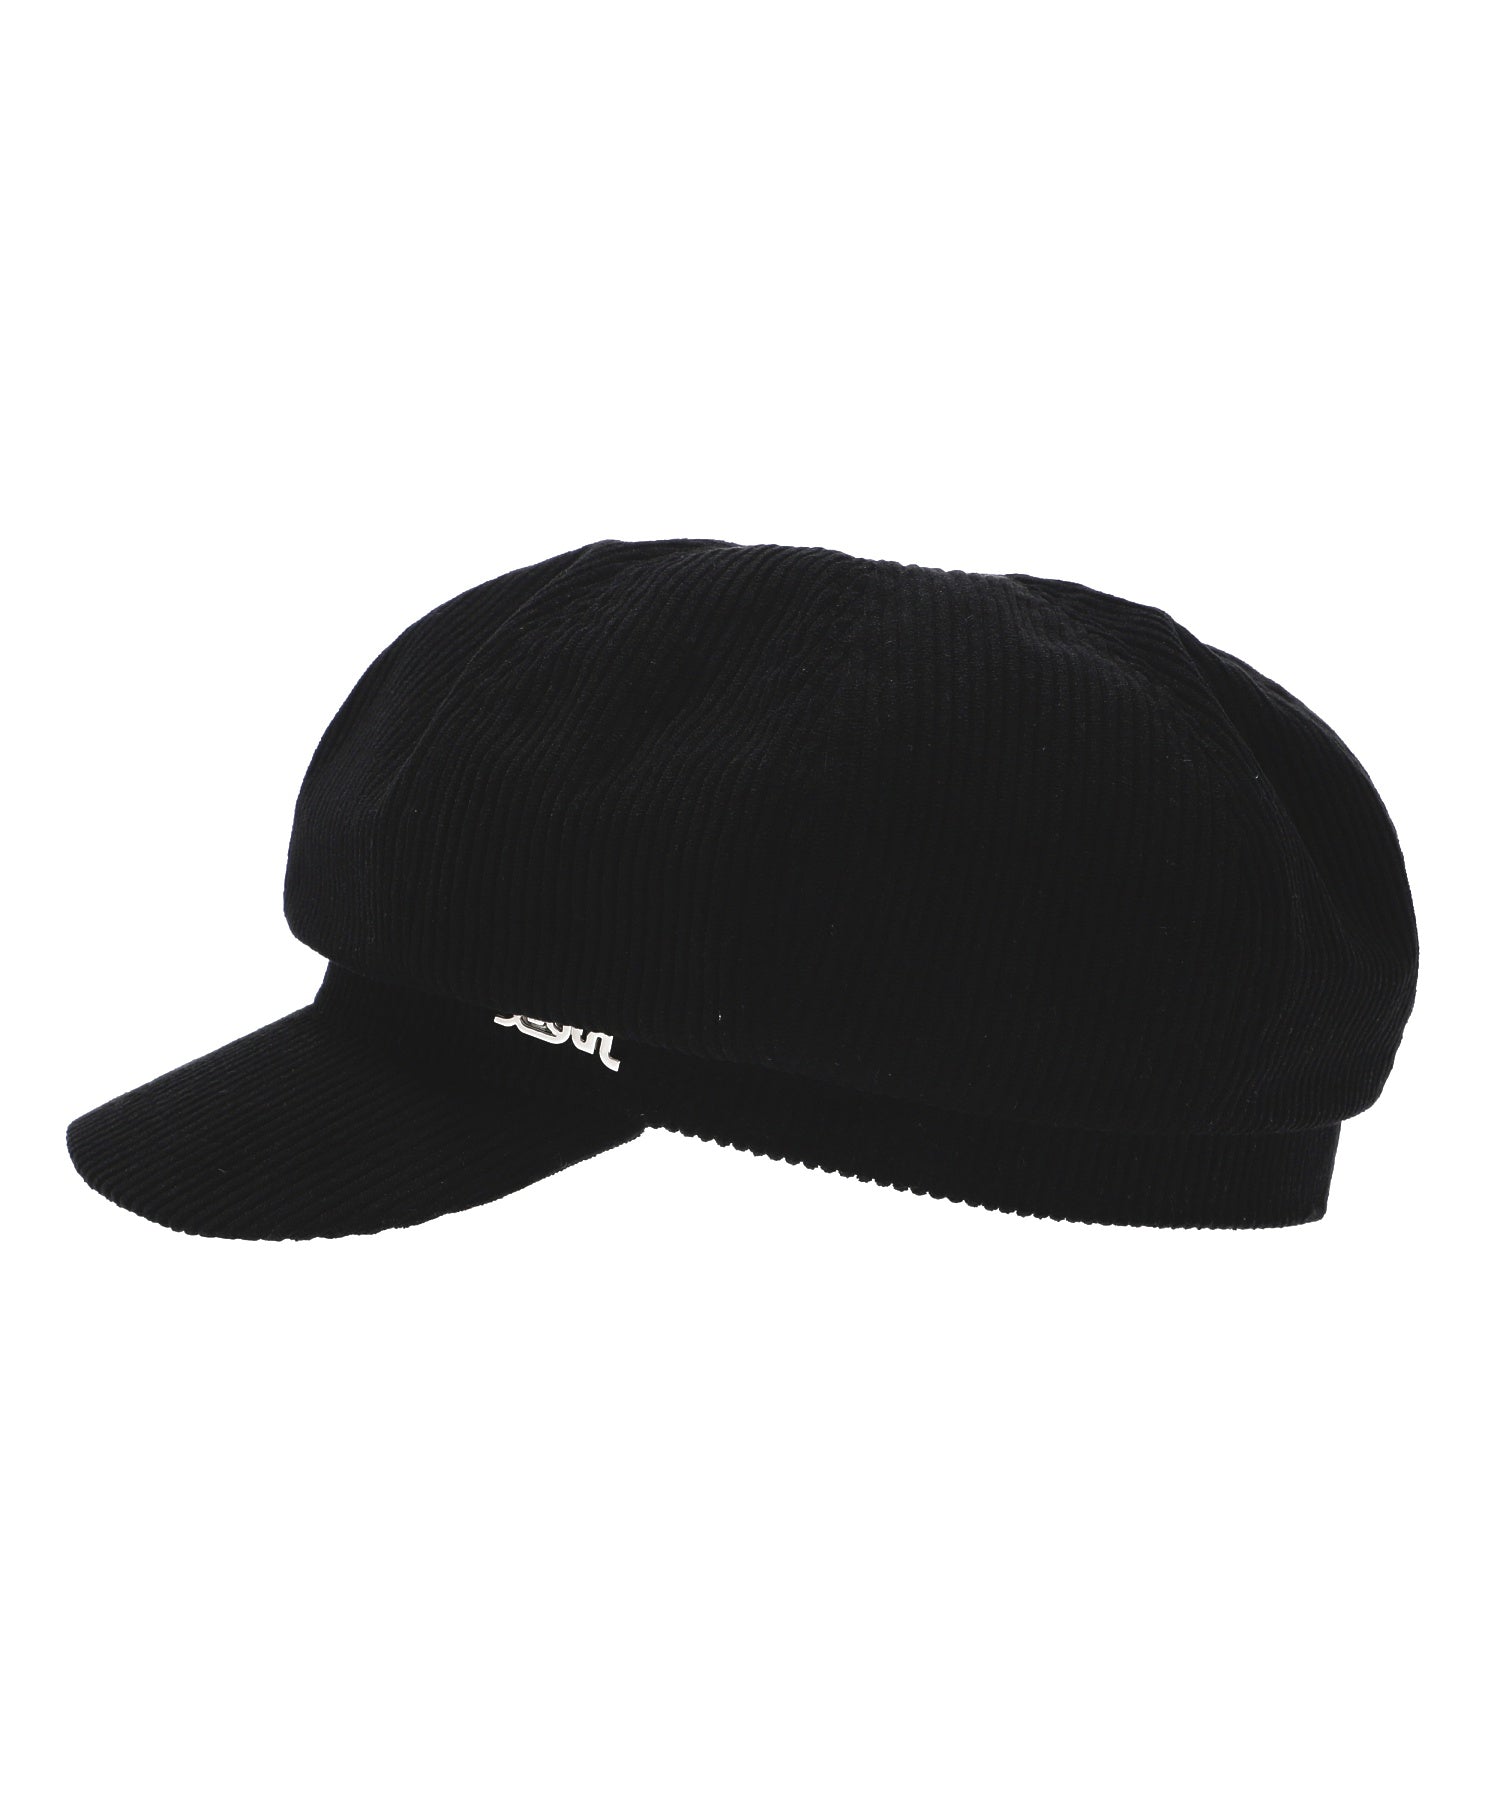 NEWSBOY CAP